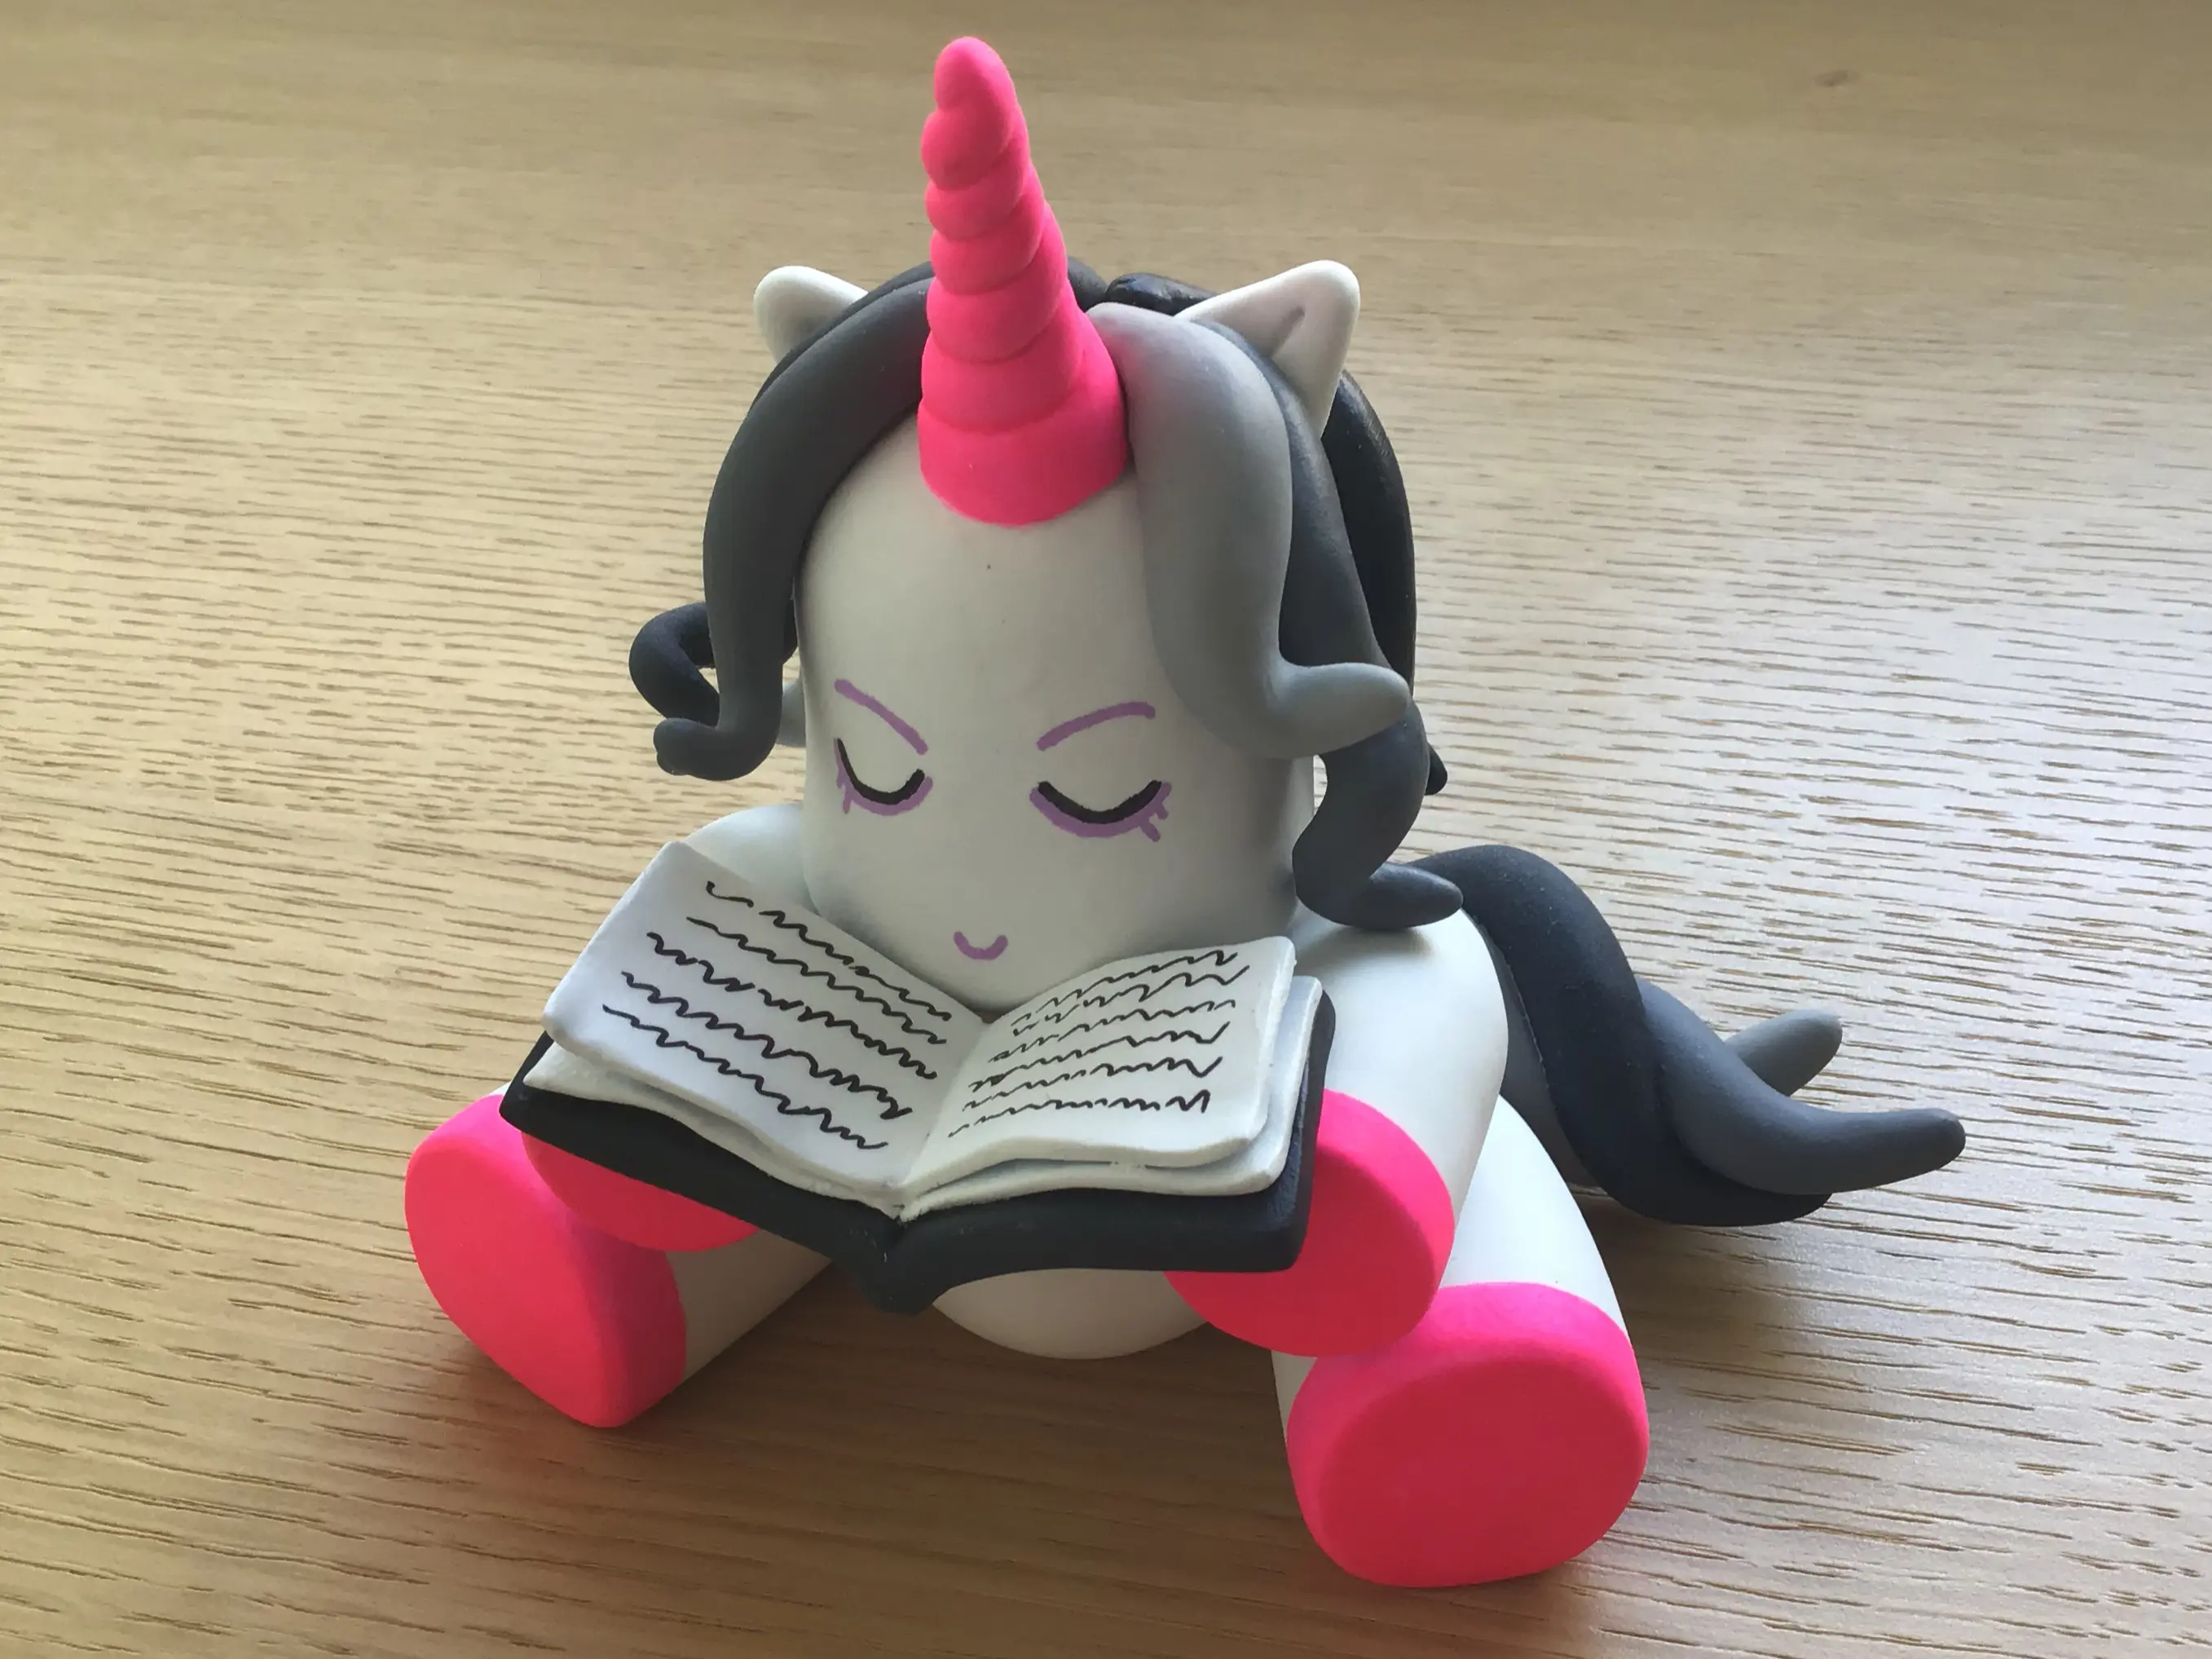 Figura de arcilla polimérica, Art Toy, terminada. Representa un unicornio sentado con un libro abierto en sus manos.